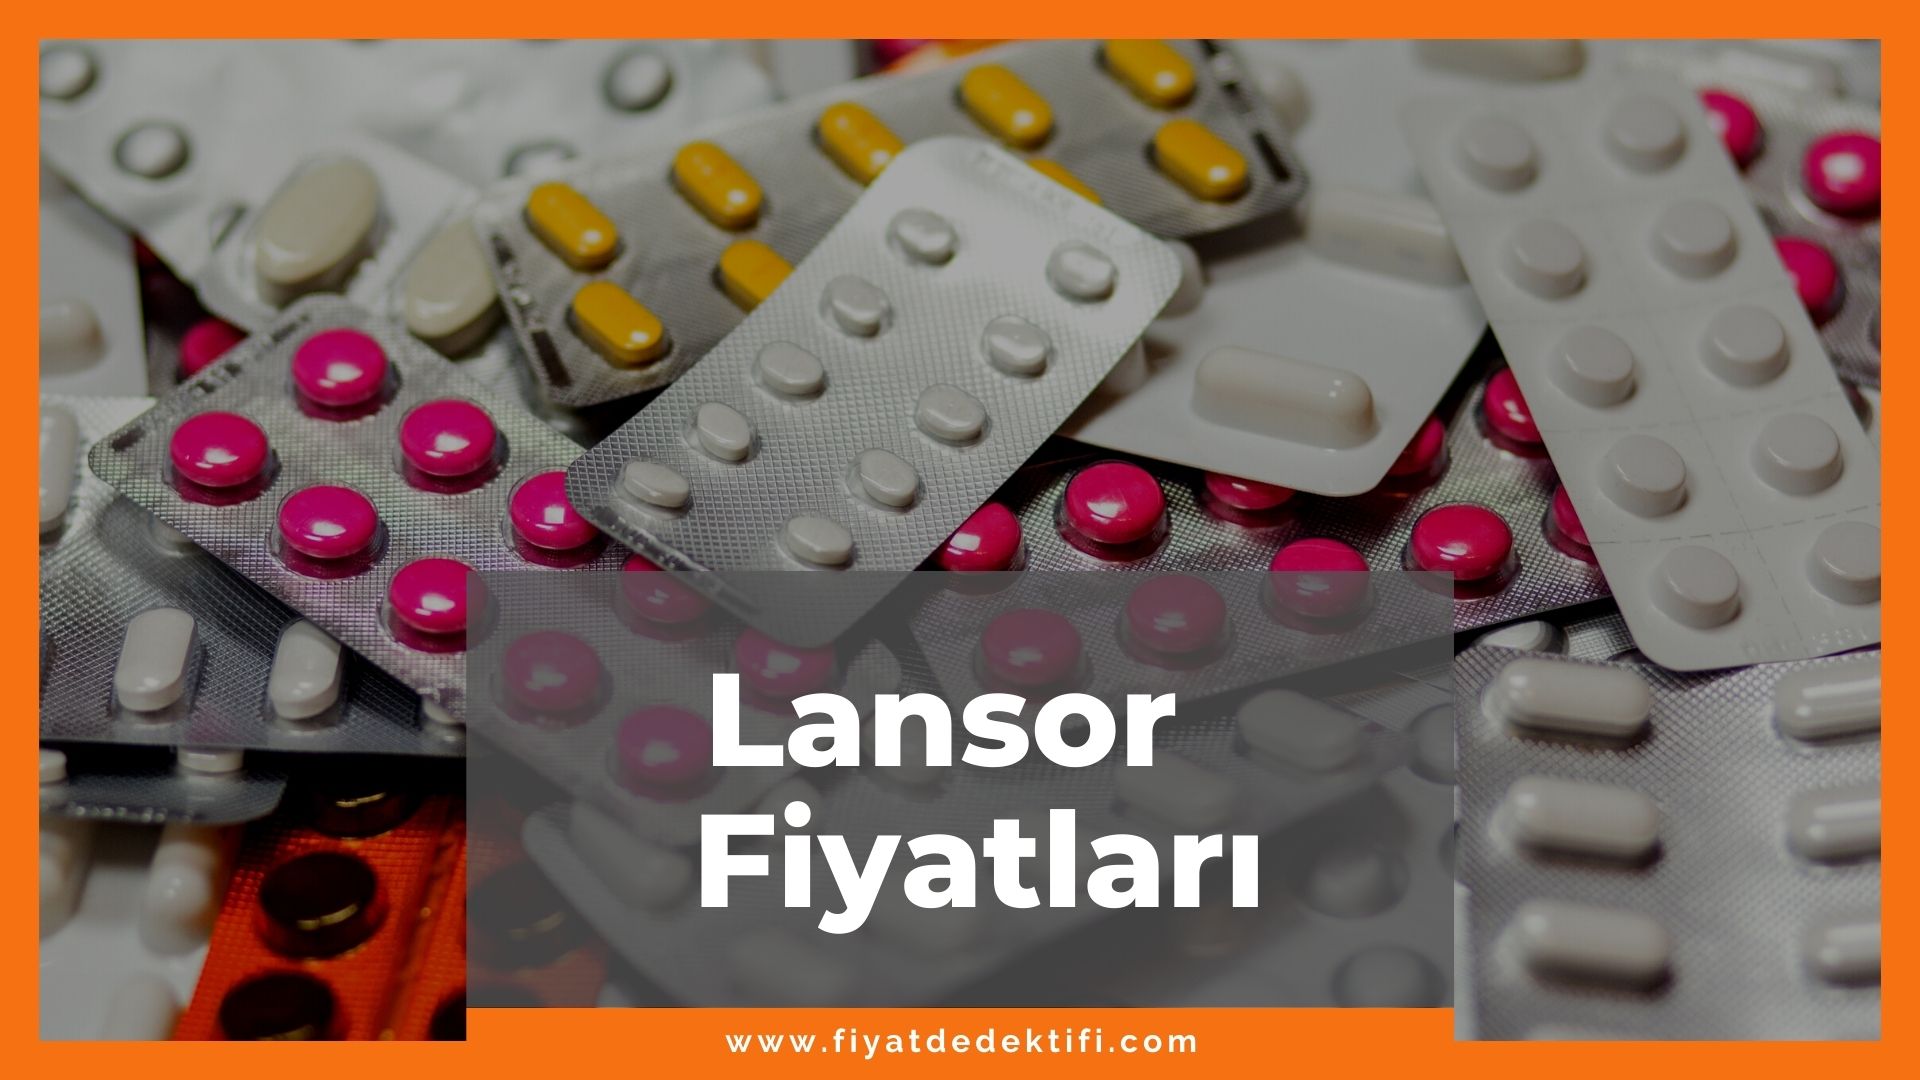 Lansor Fiyat 2021, Lansor Fiyatı, Lansor Kapsül Fiyat, lansor ilacı fiyatı ne kadar, lansor fiyat zamlandı mı, lansor zamlı fiyat